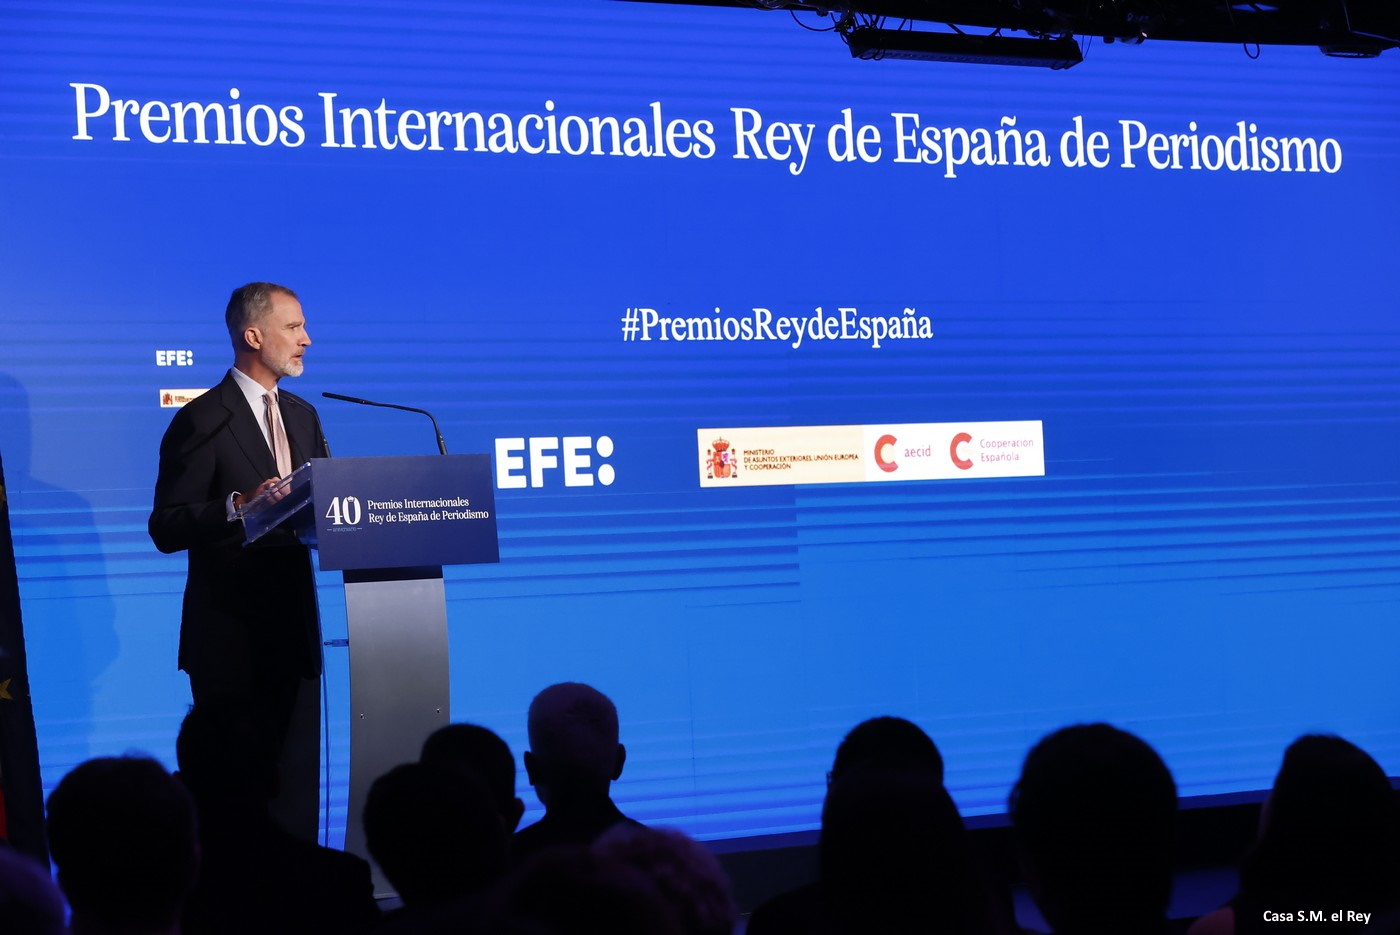 Premios Internacionales Rey de España de Periodismo